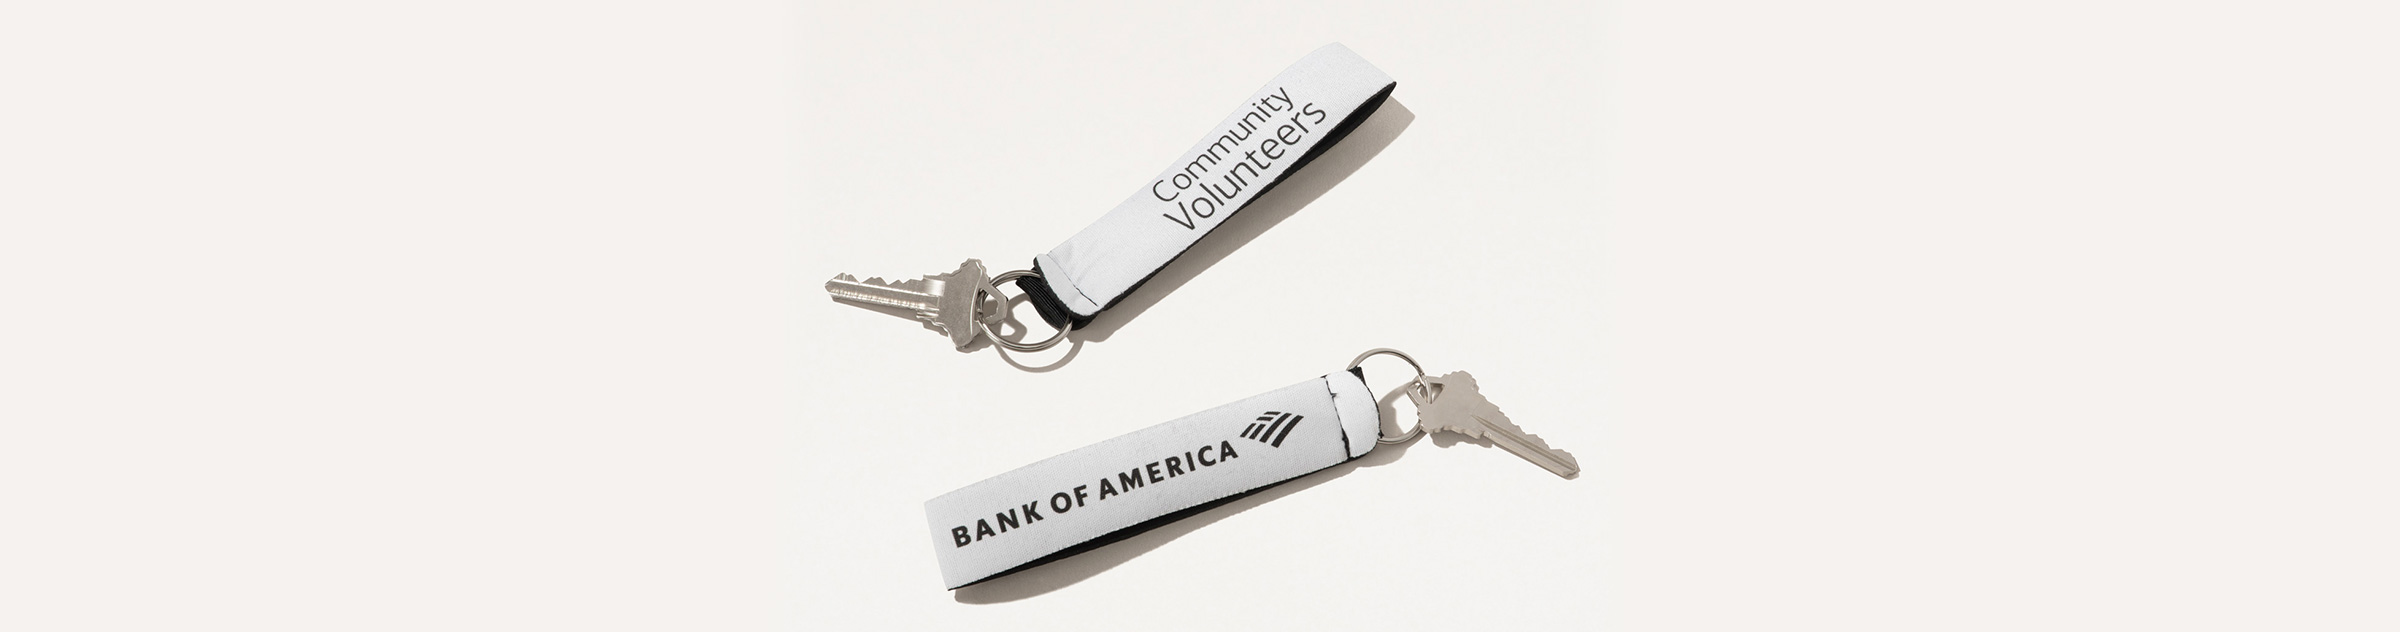 Bank of America Community Volunteers